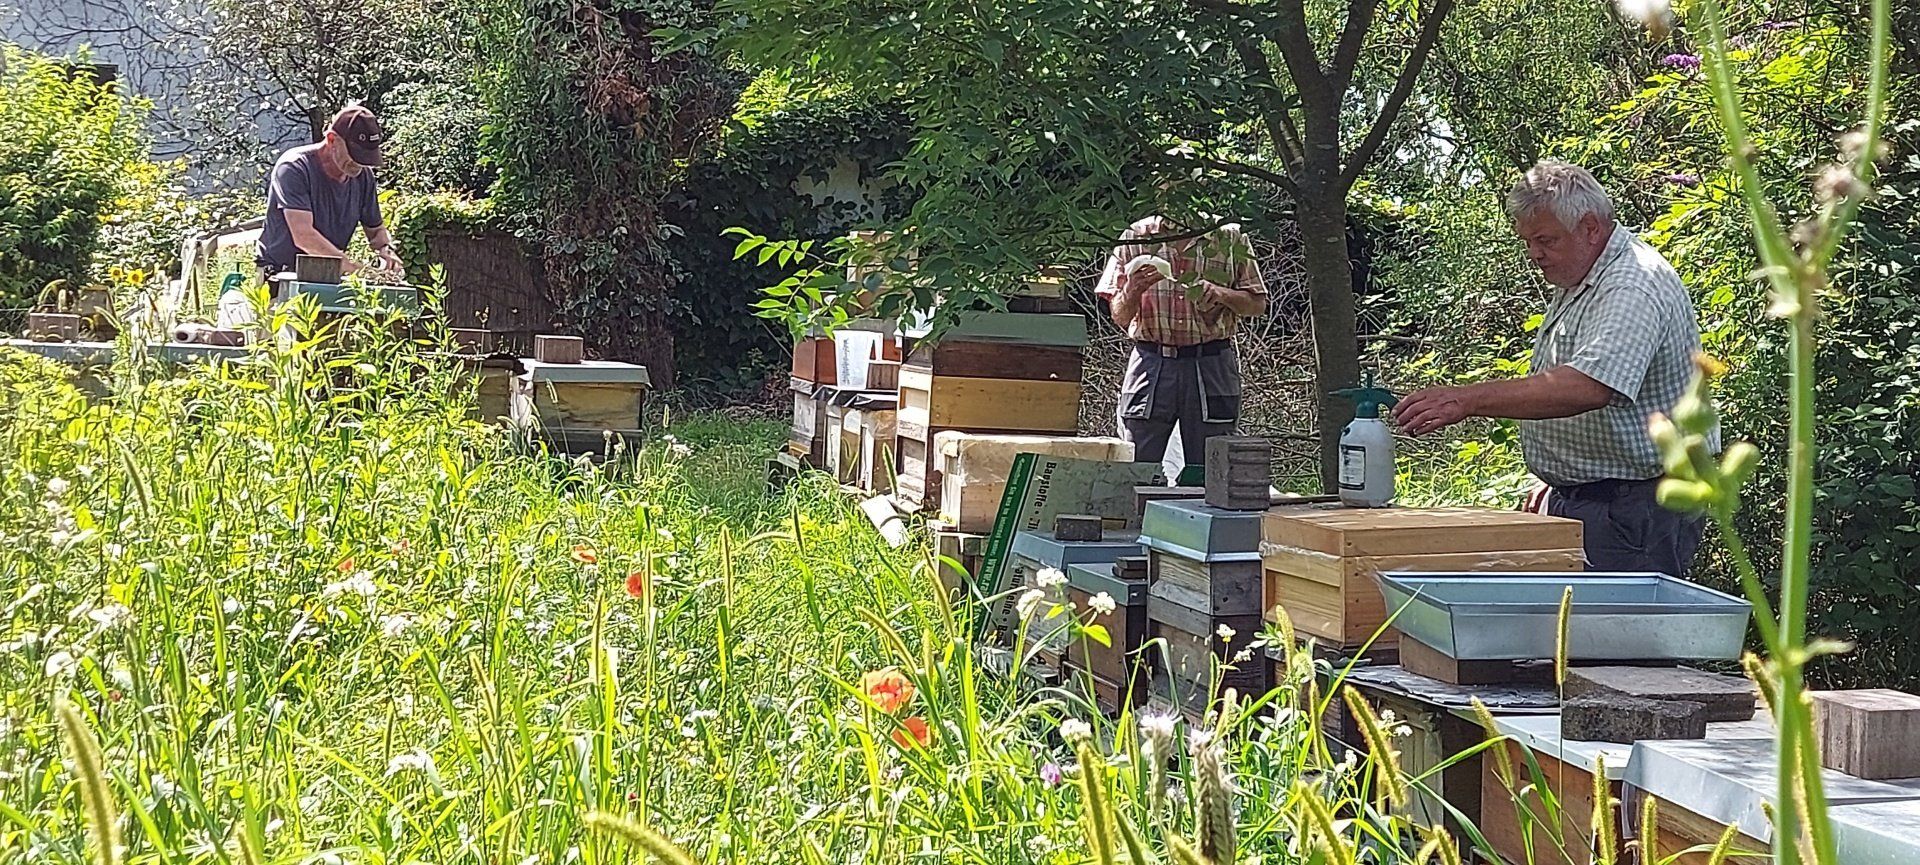 Die Imkergemeinschaft Magers, Eisen und Fütterer aus Bietigheim/Baden bei der Kontrolle ihrer sanftmütigen Bienenvölker